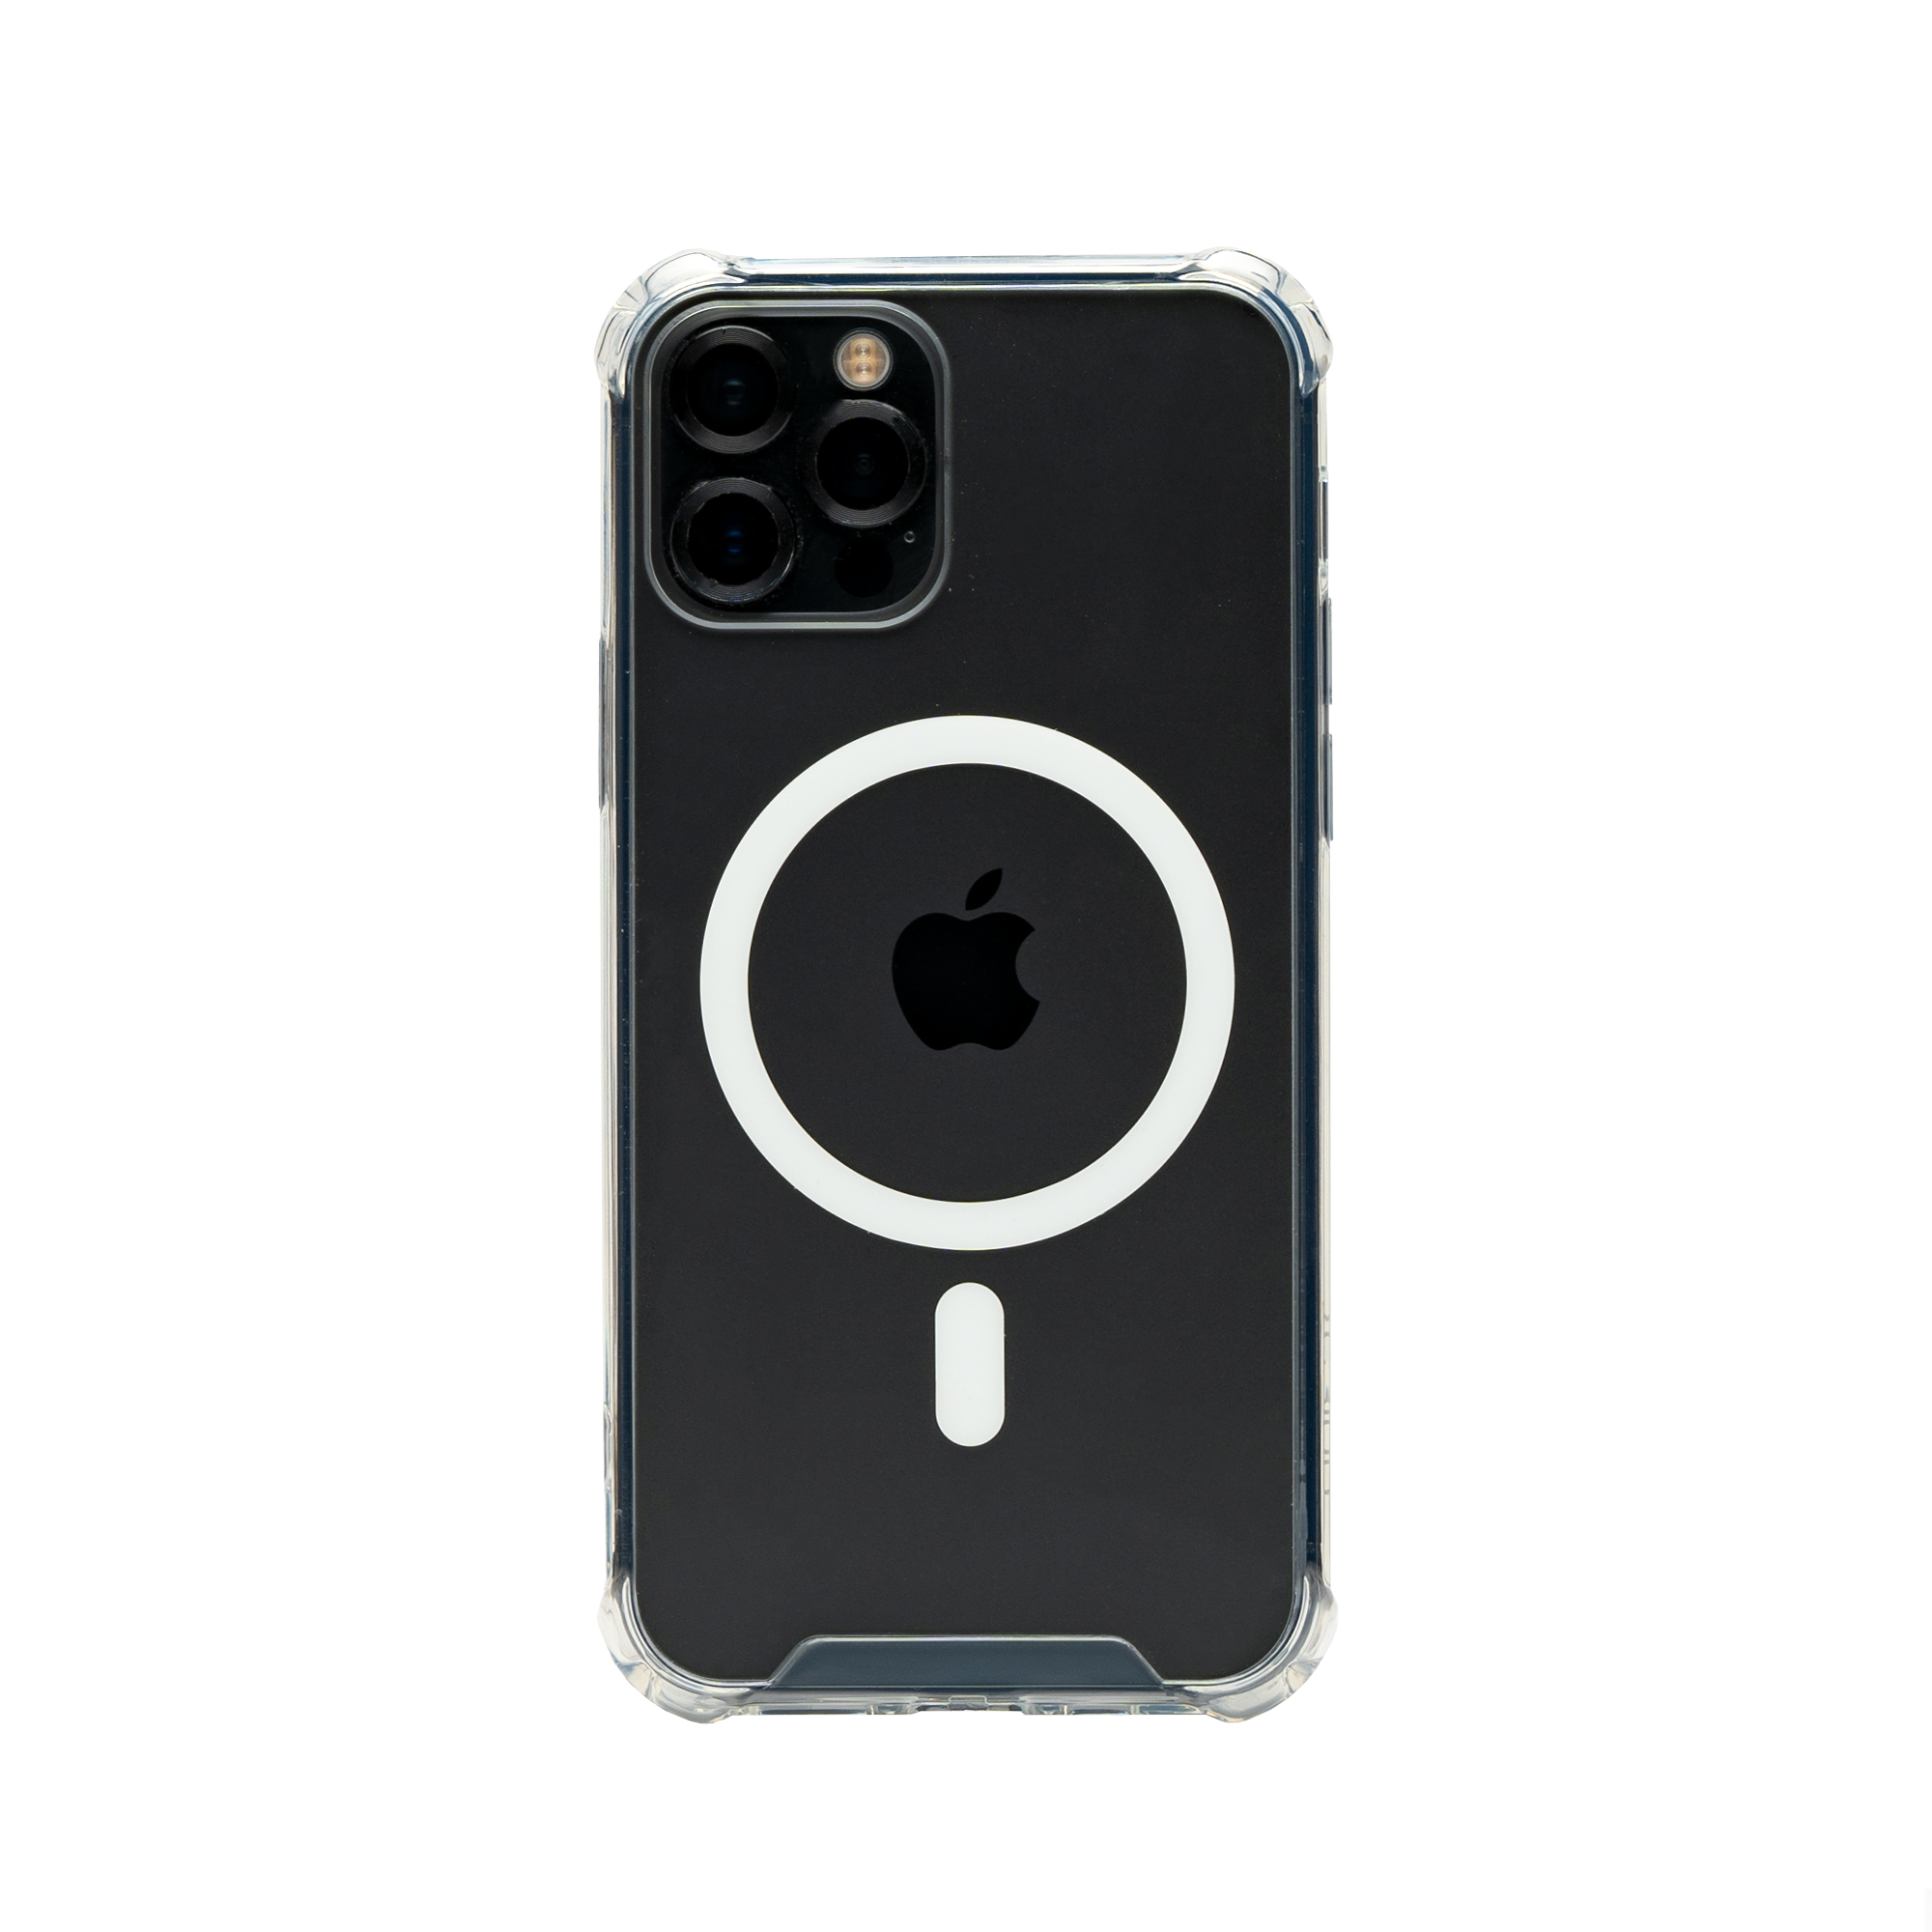   کاور یسیدو مدل MagSafe مناسب برای گوشی موبایل اپل  Iphone12 Pro 